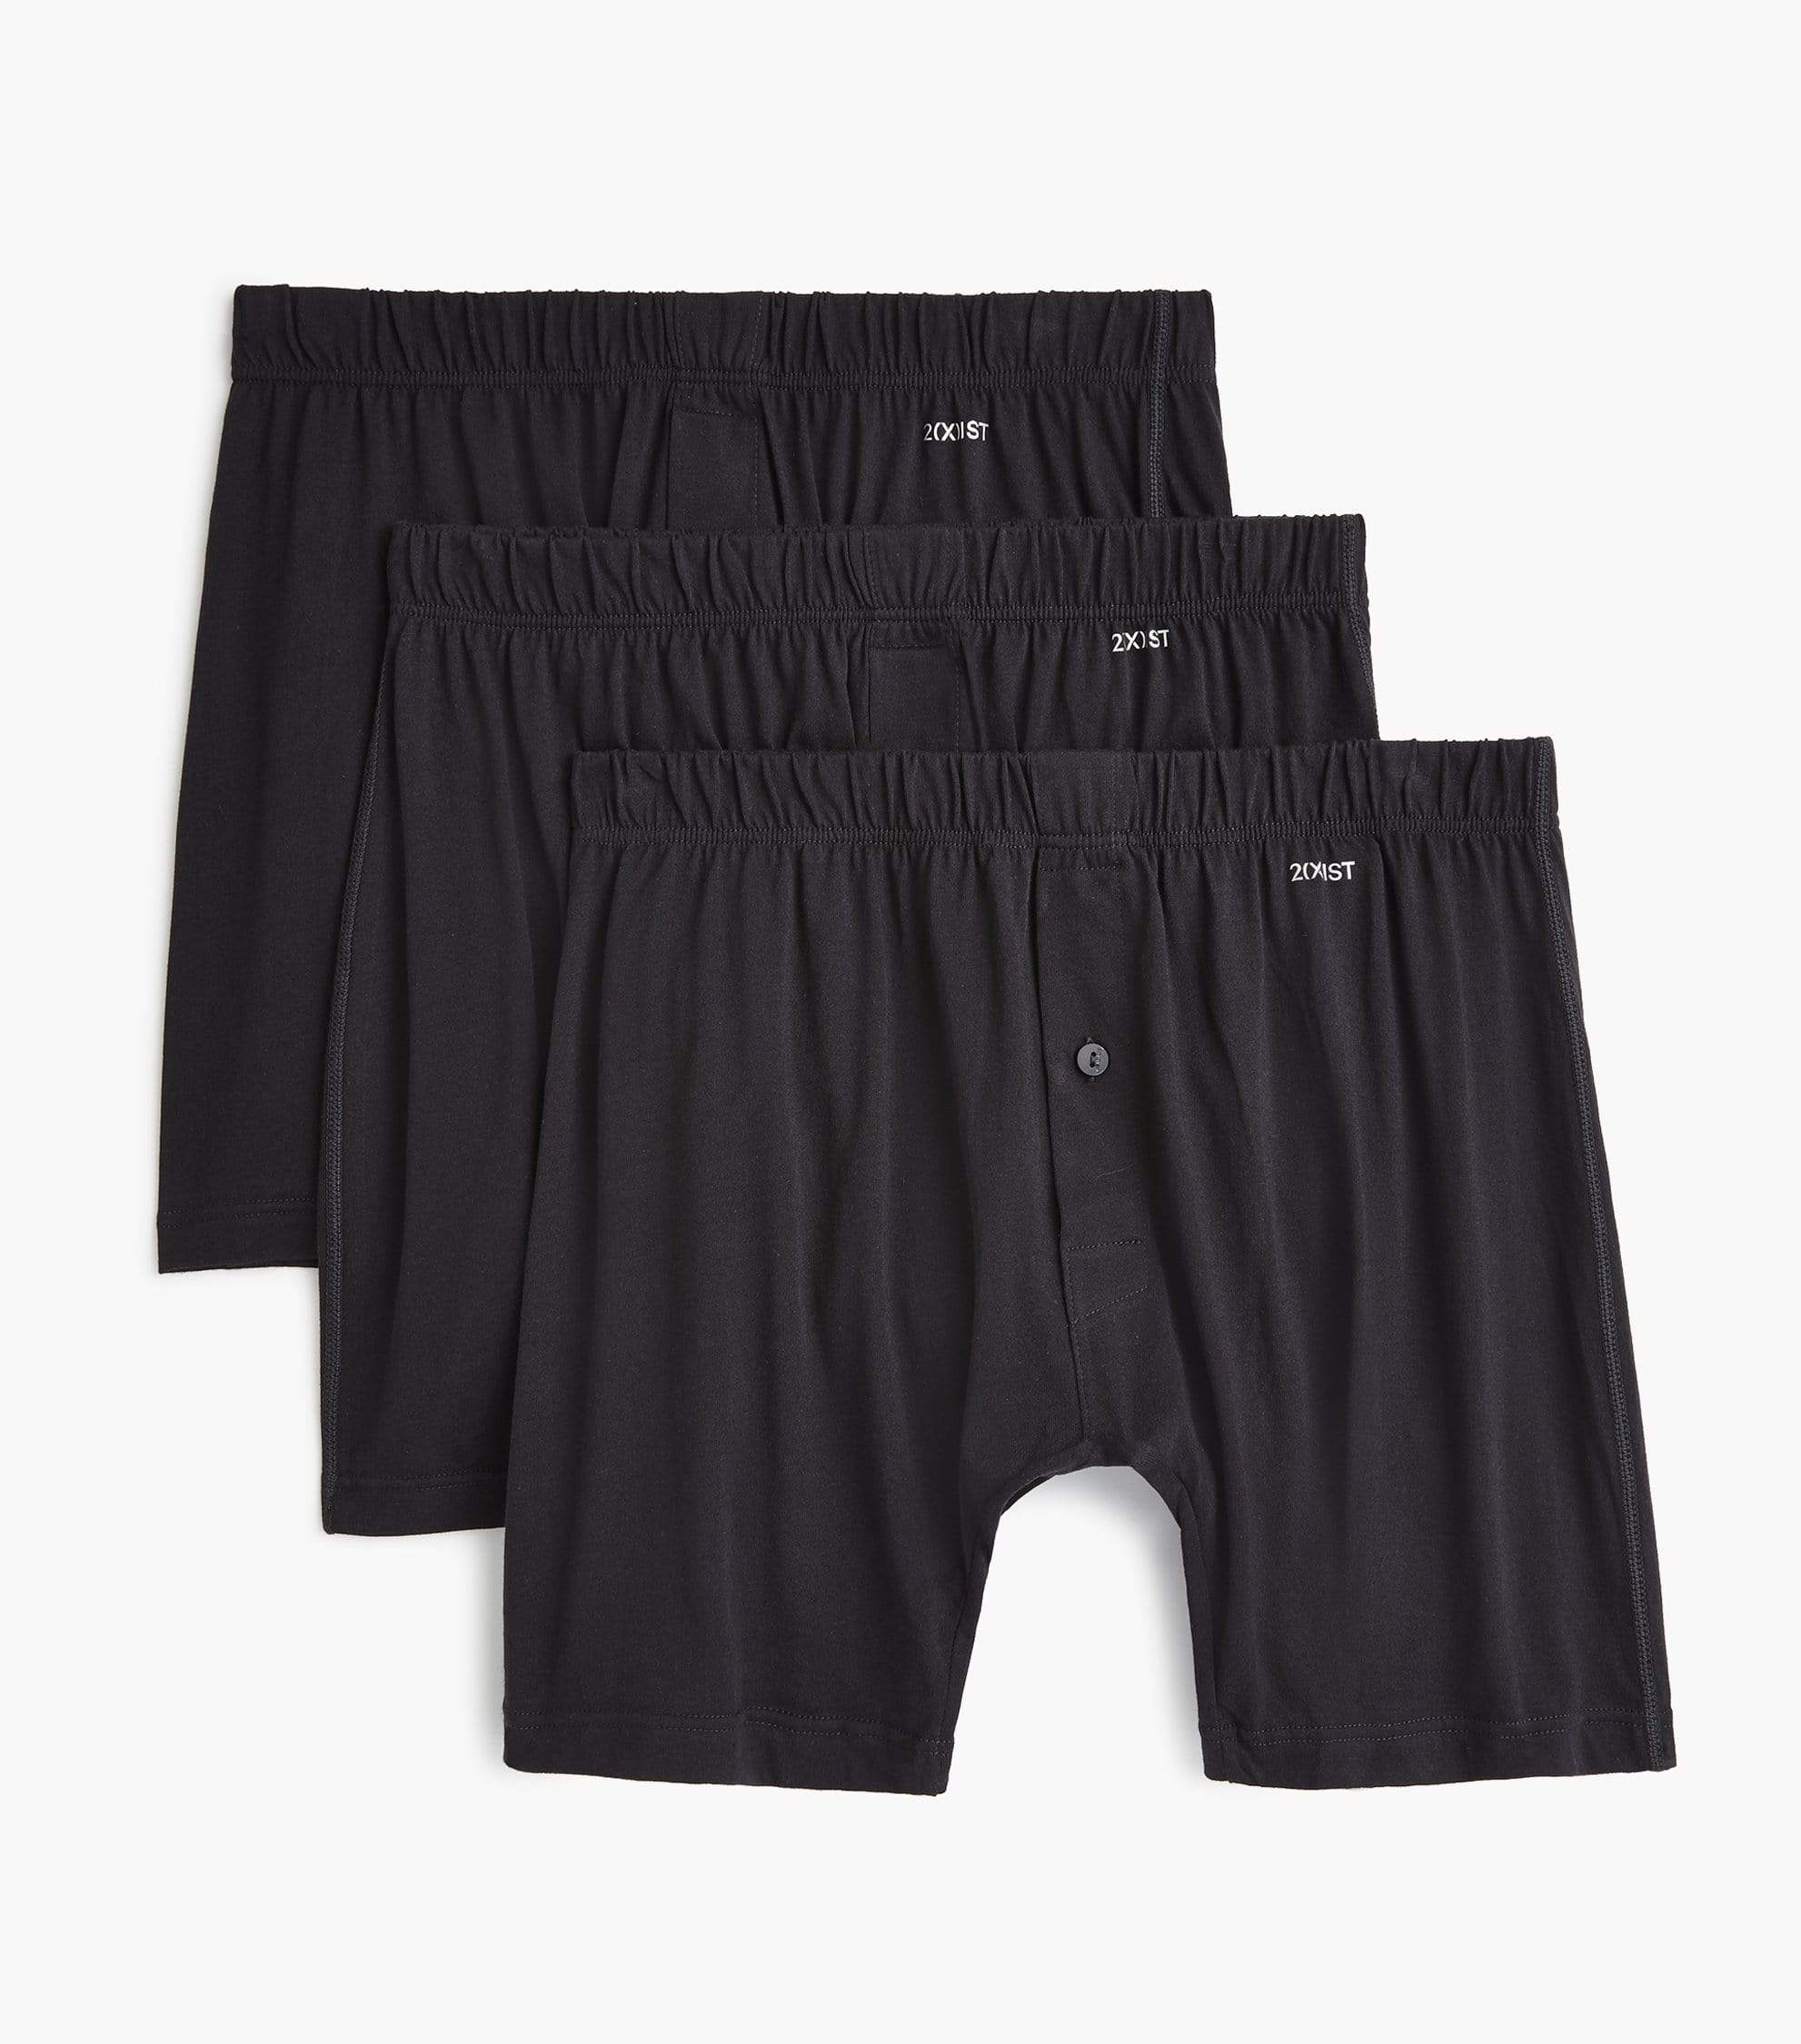 New 2 Pcs Hathaway Mens Knit Boxer short underwear COTTON/SPANDEX~ M L XL